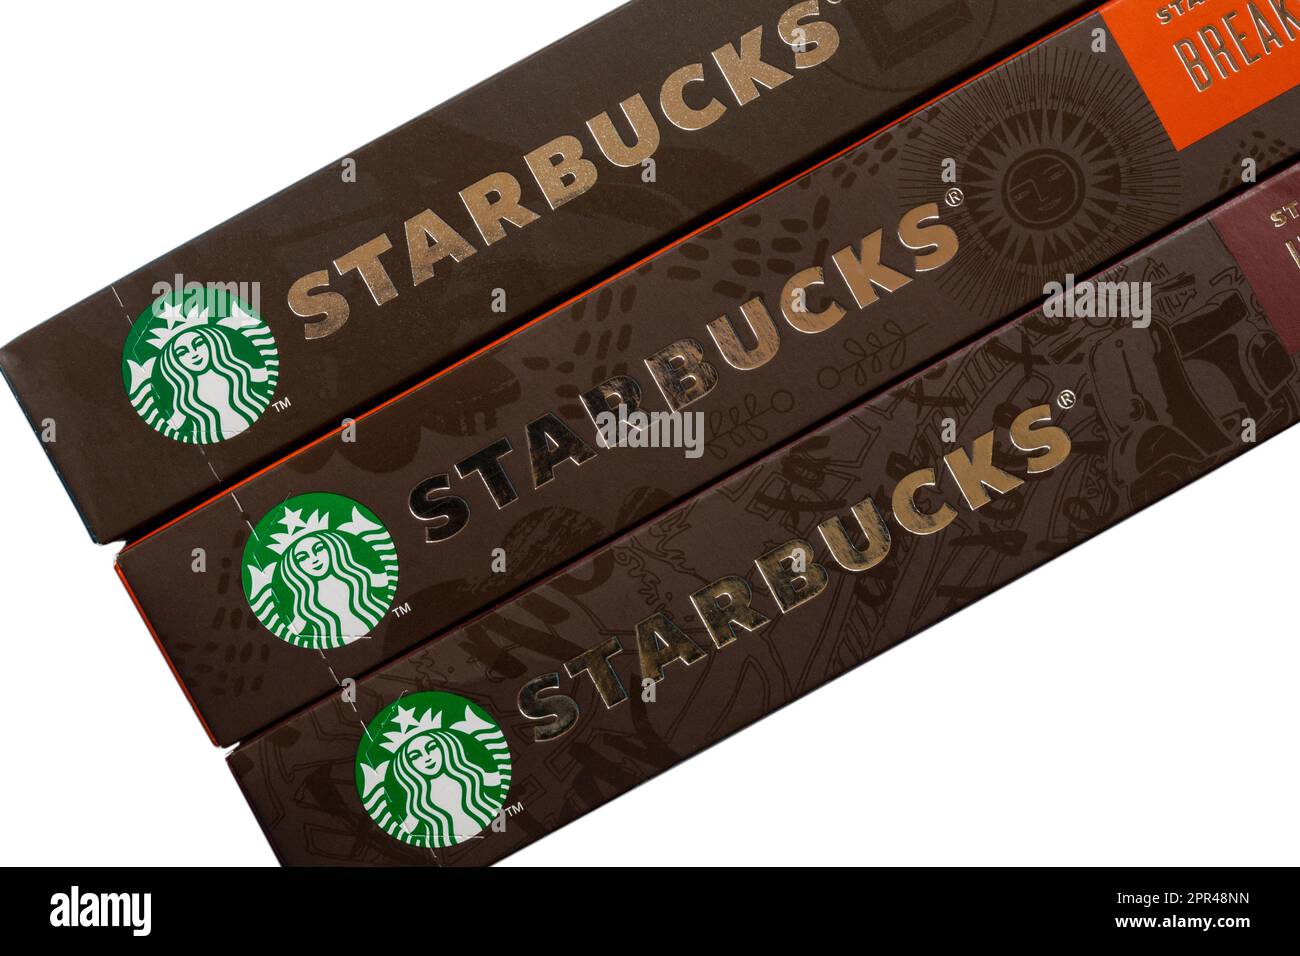 Logotipo de Starbucks en cajas de cápsulas de café Starbucks de Nespresso  Fotografía de stock - Alamy